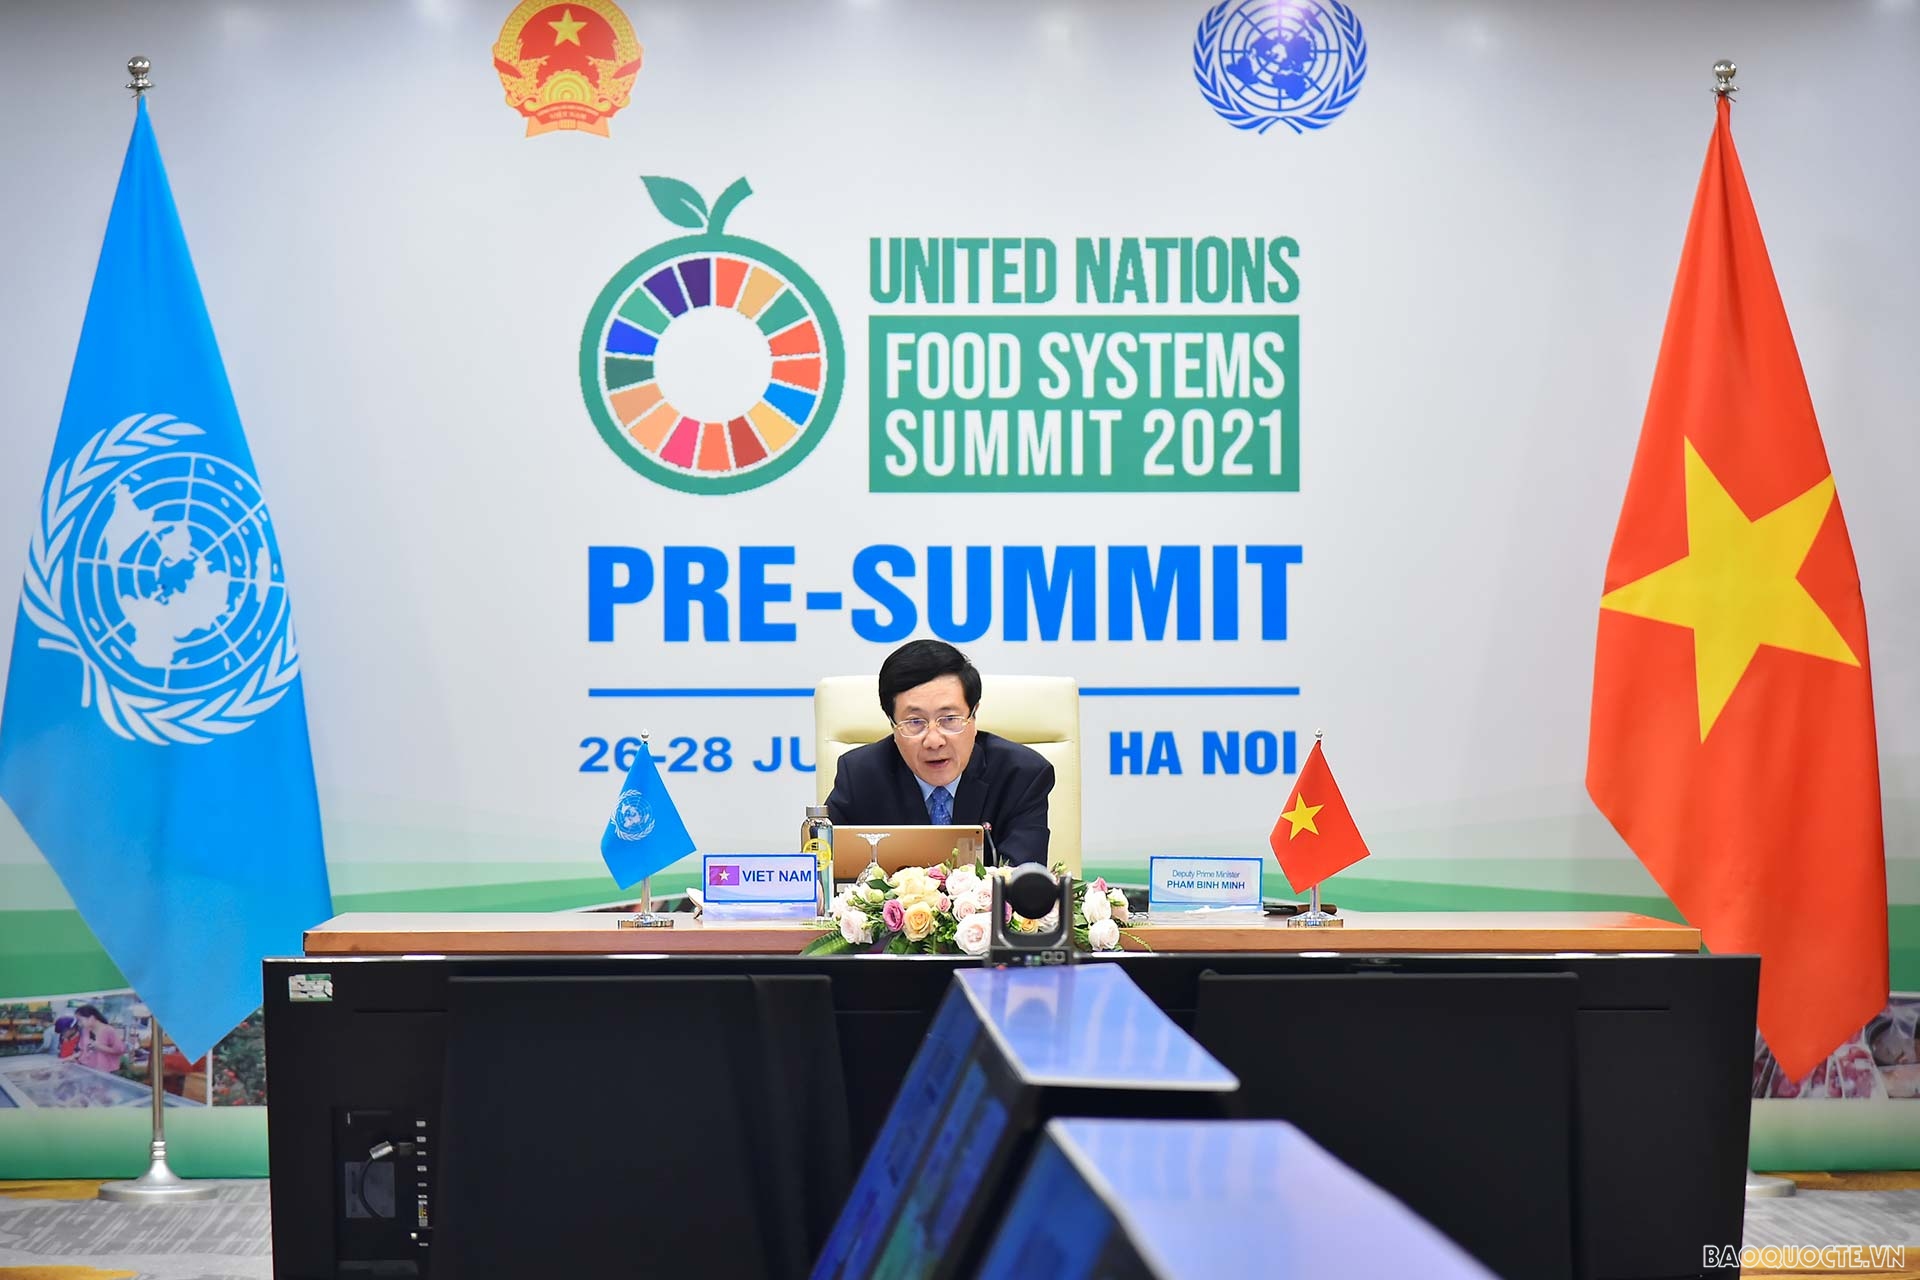 Deputy PM Pham Binh Minh’s statement at Pre-Summit of UN Food Systems Summit